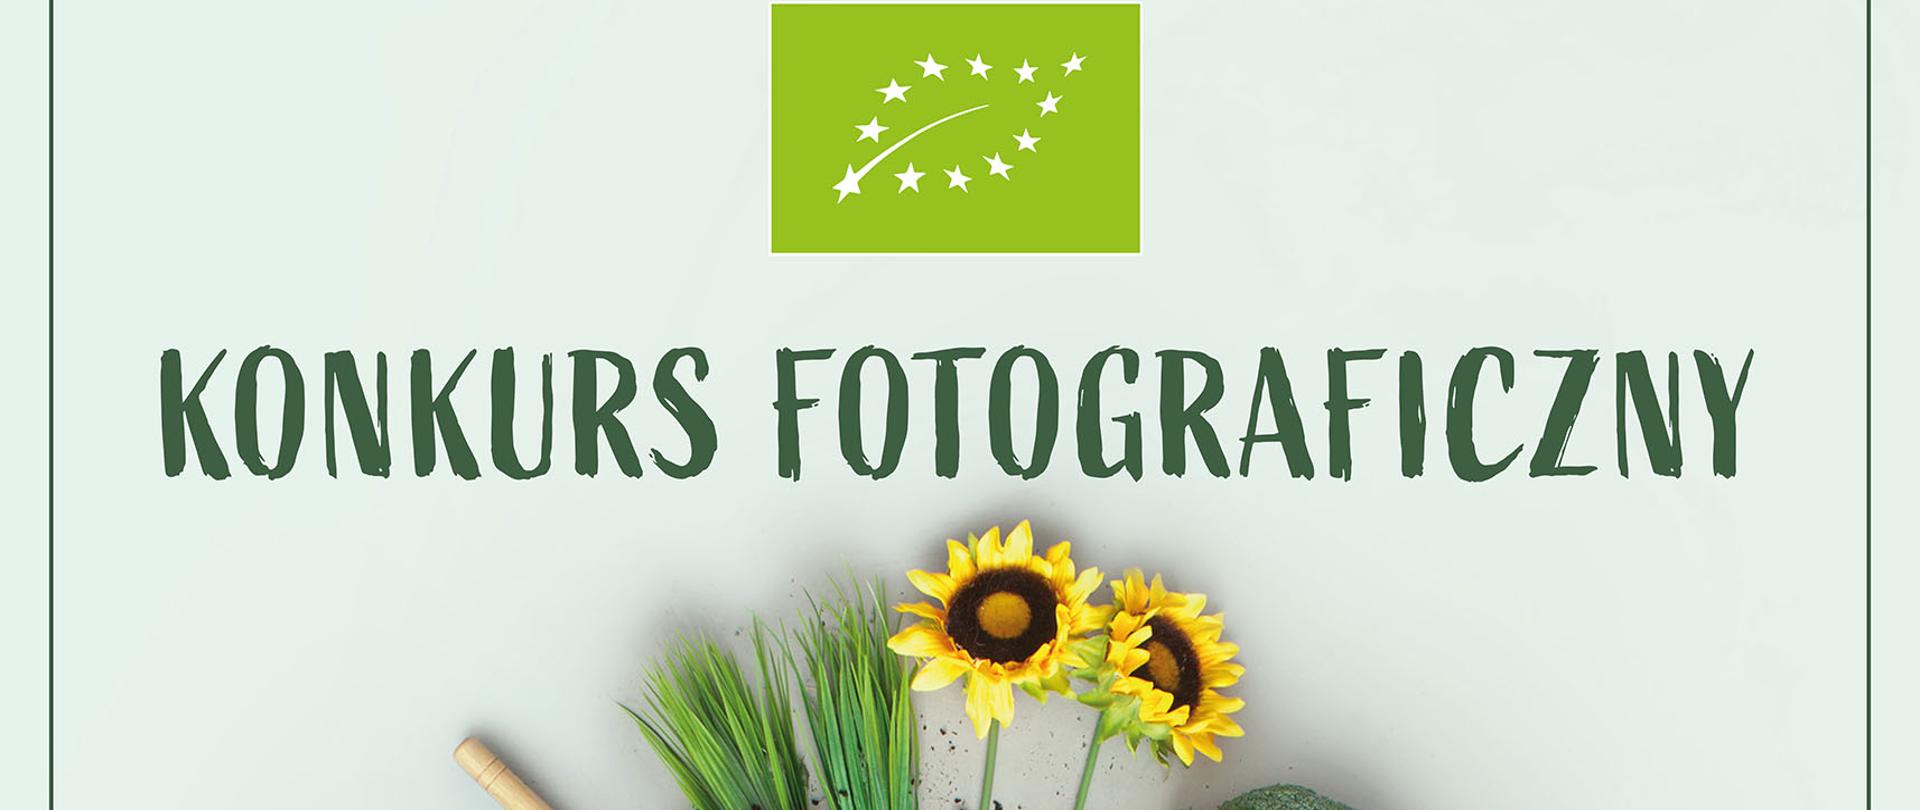 Konkurs fotograficzny "Rolnictwo ekologiczne"